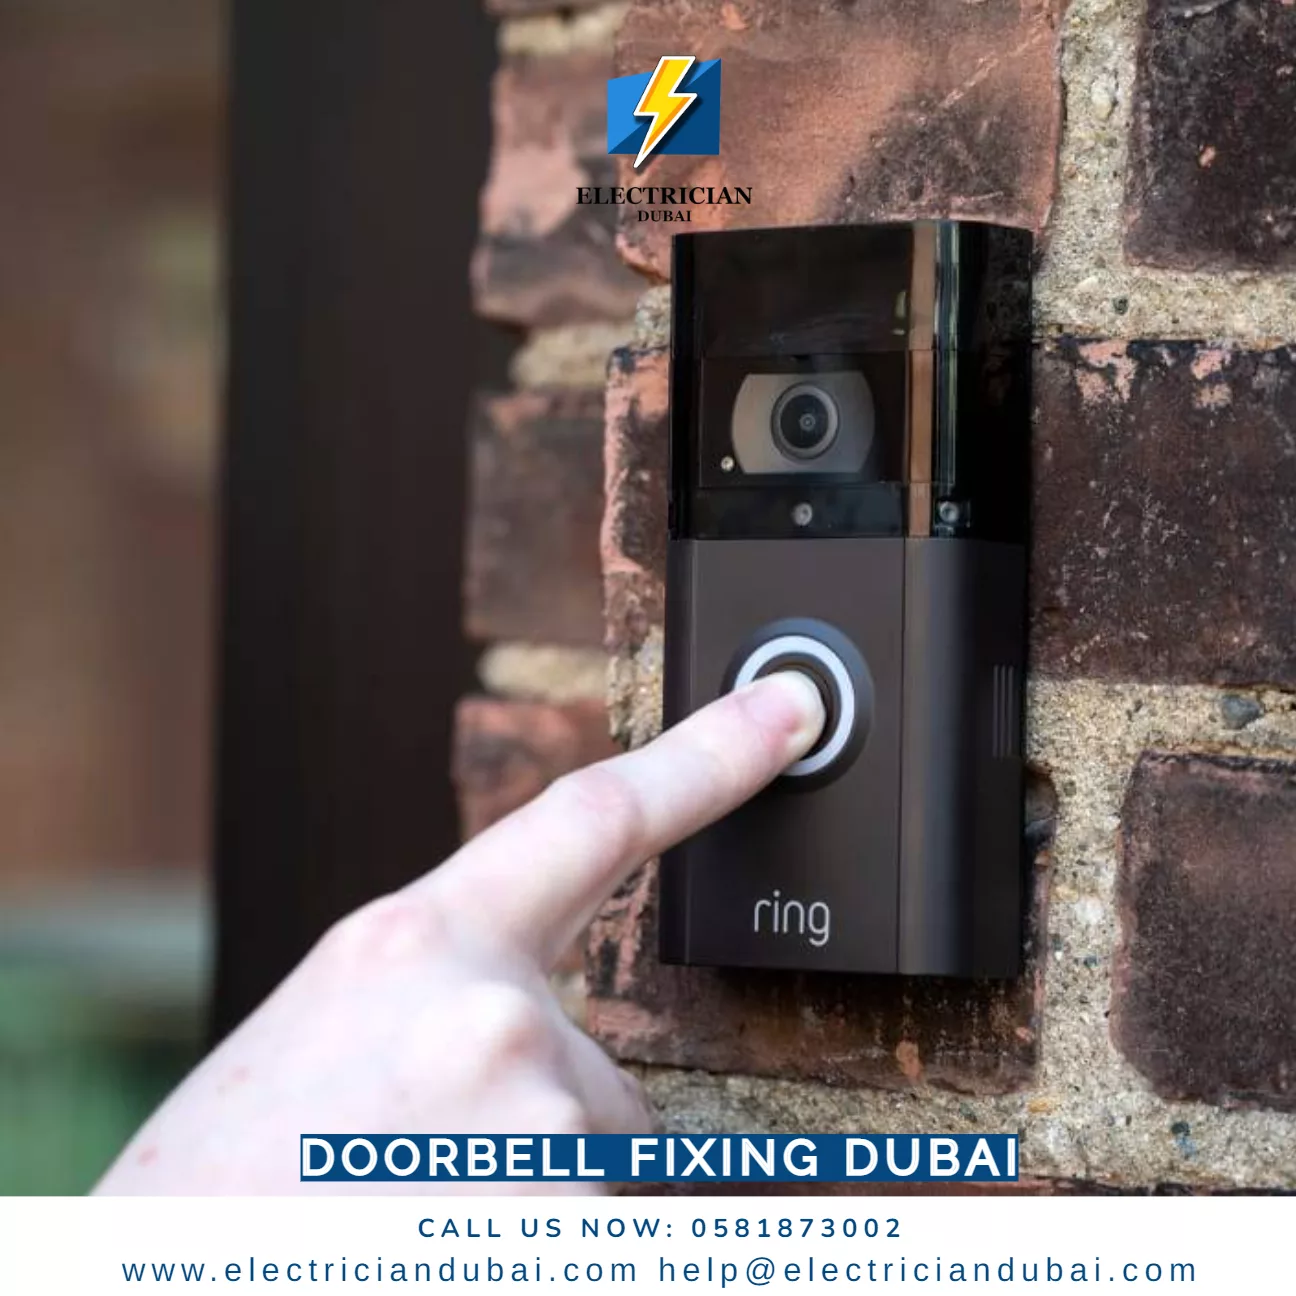 Doorbell fixing dubai